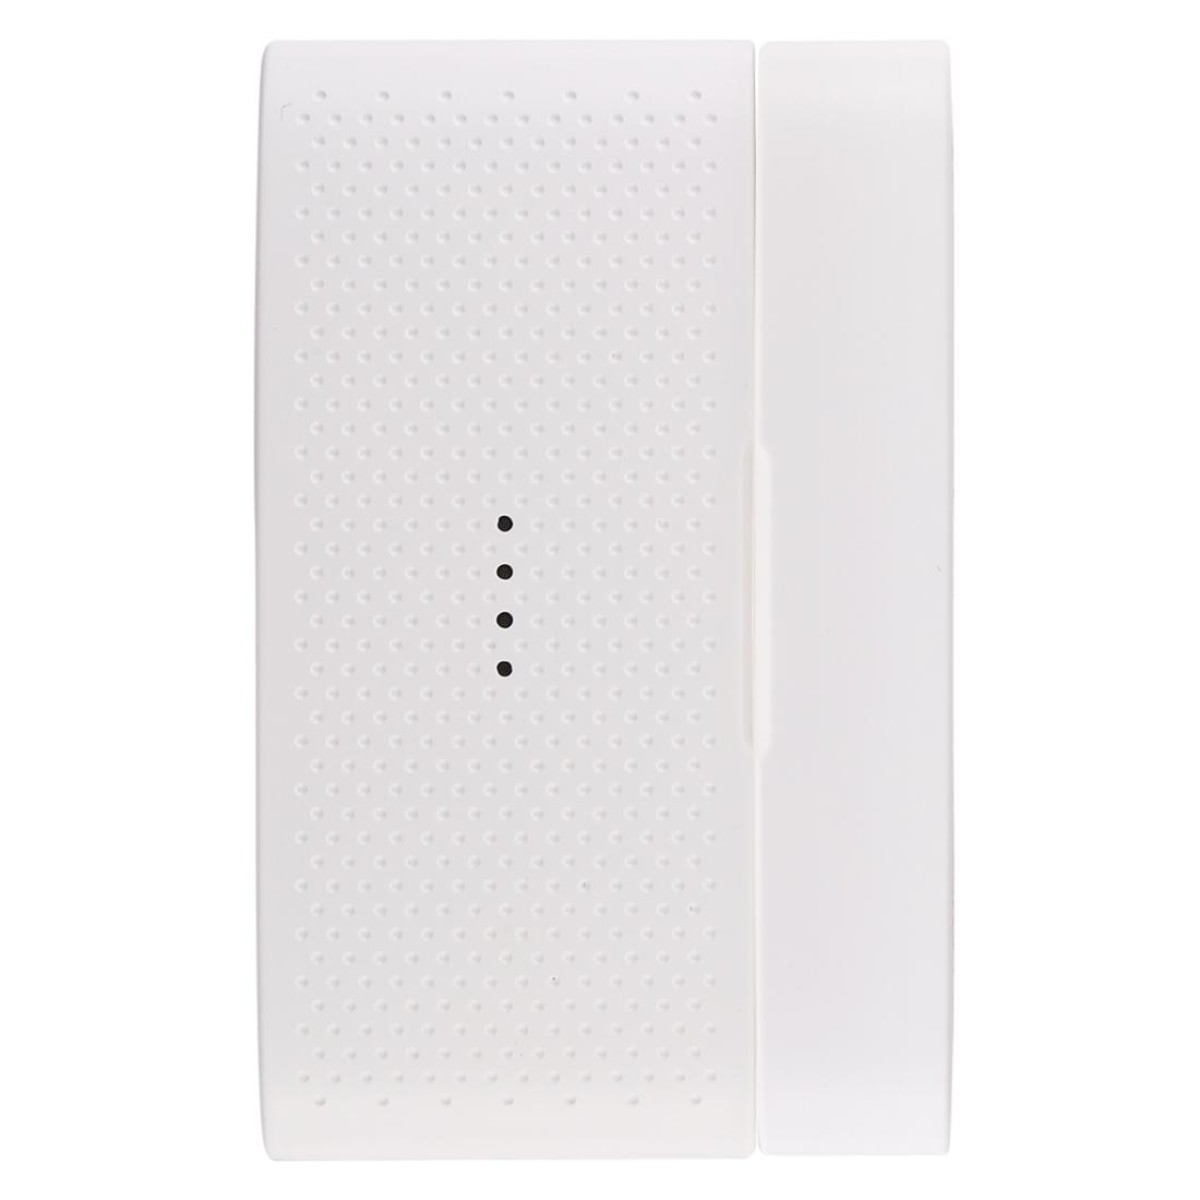 433MHz Wireless Low Power Door Sensor(White)